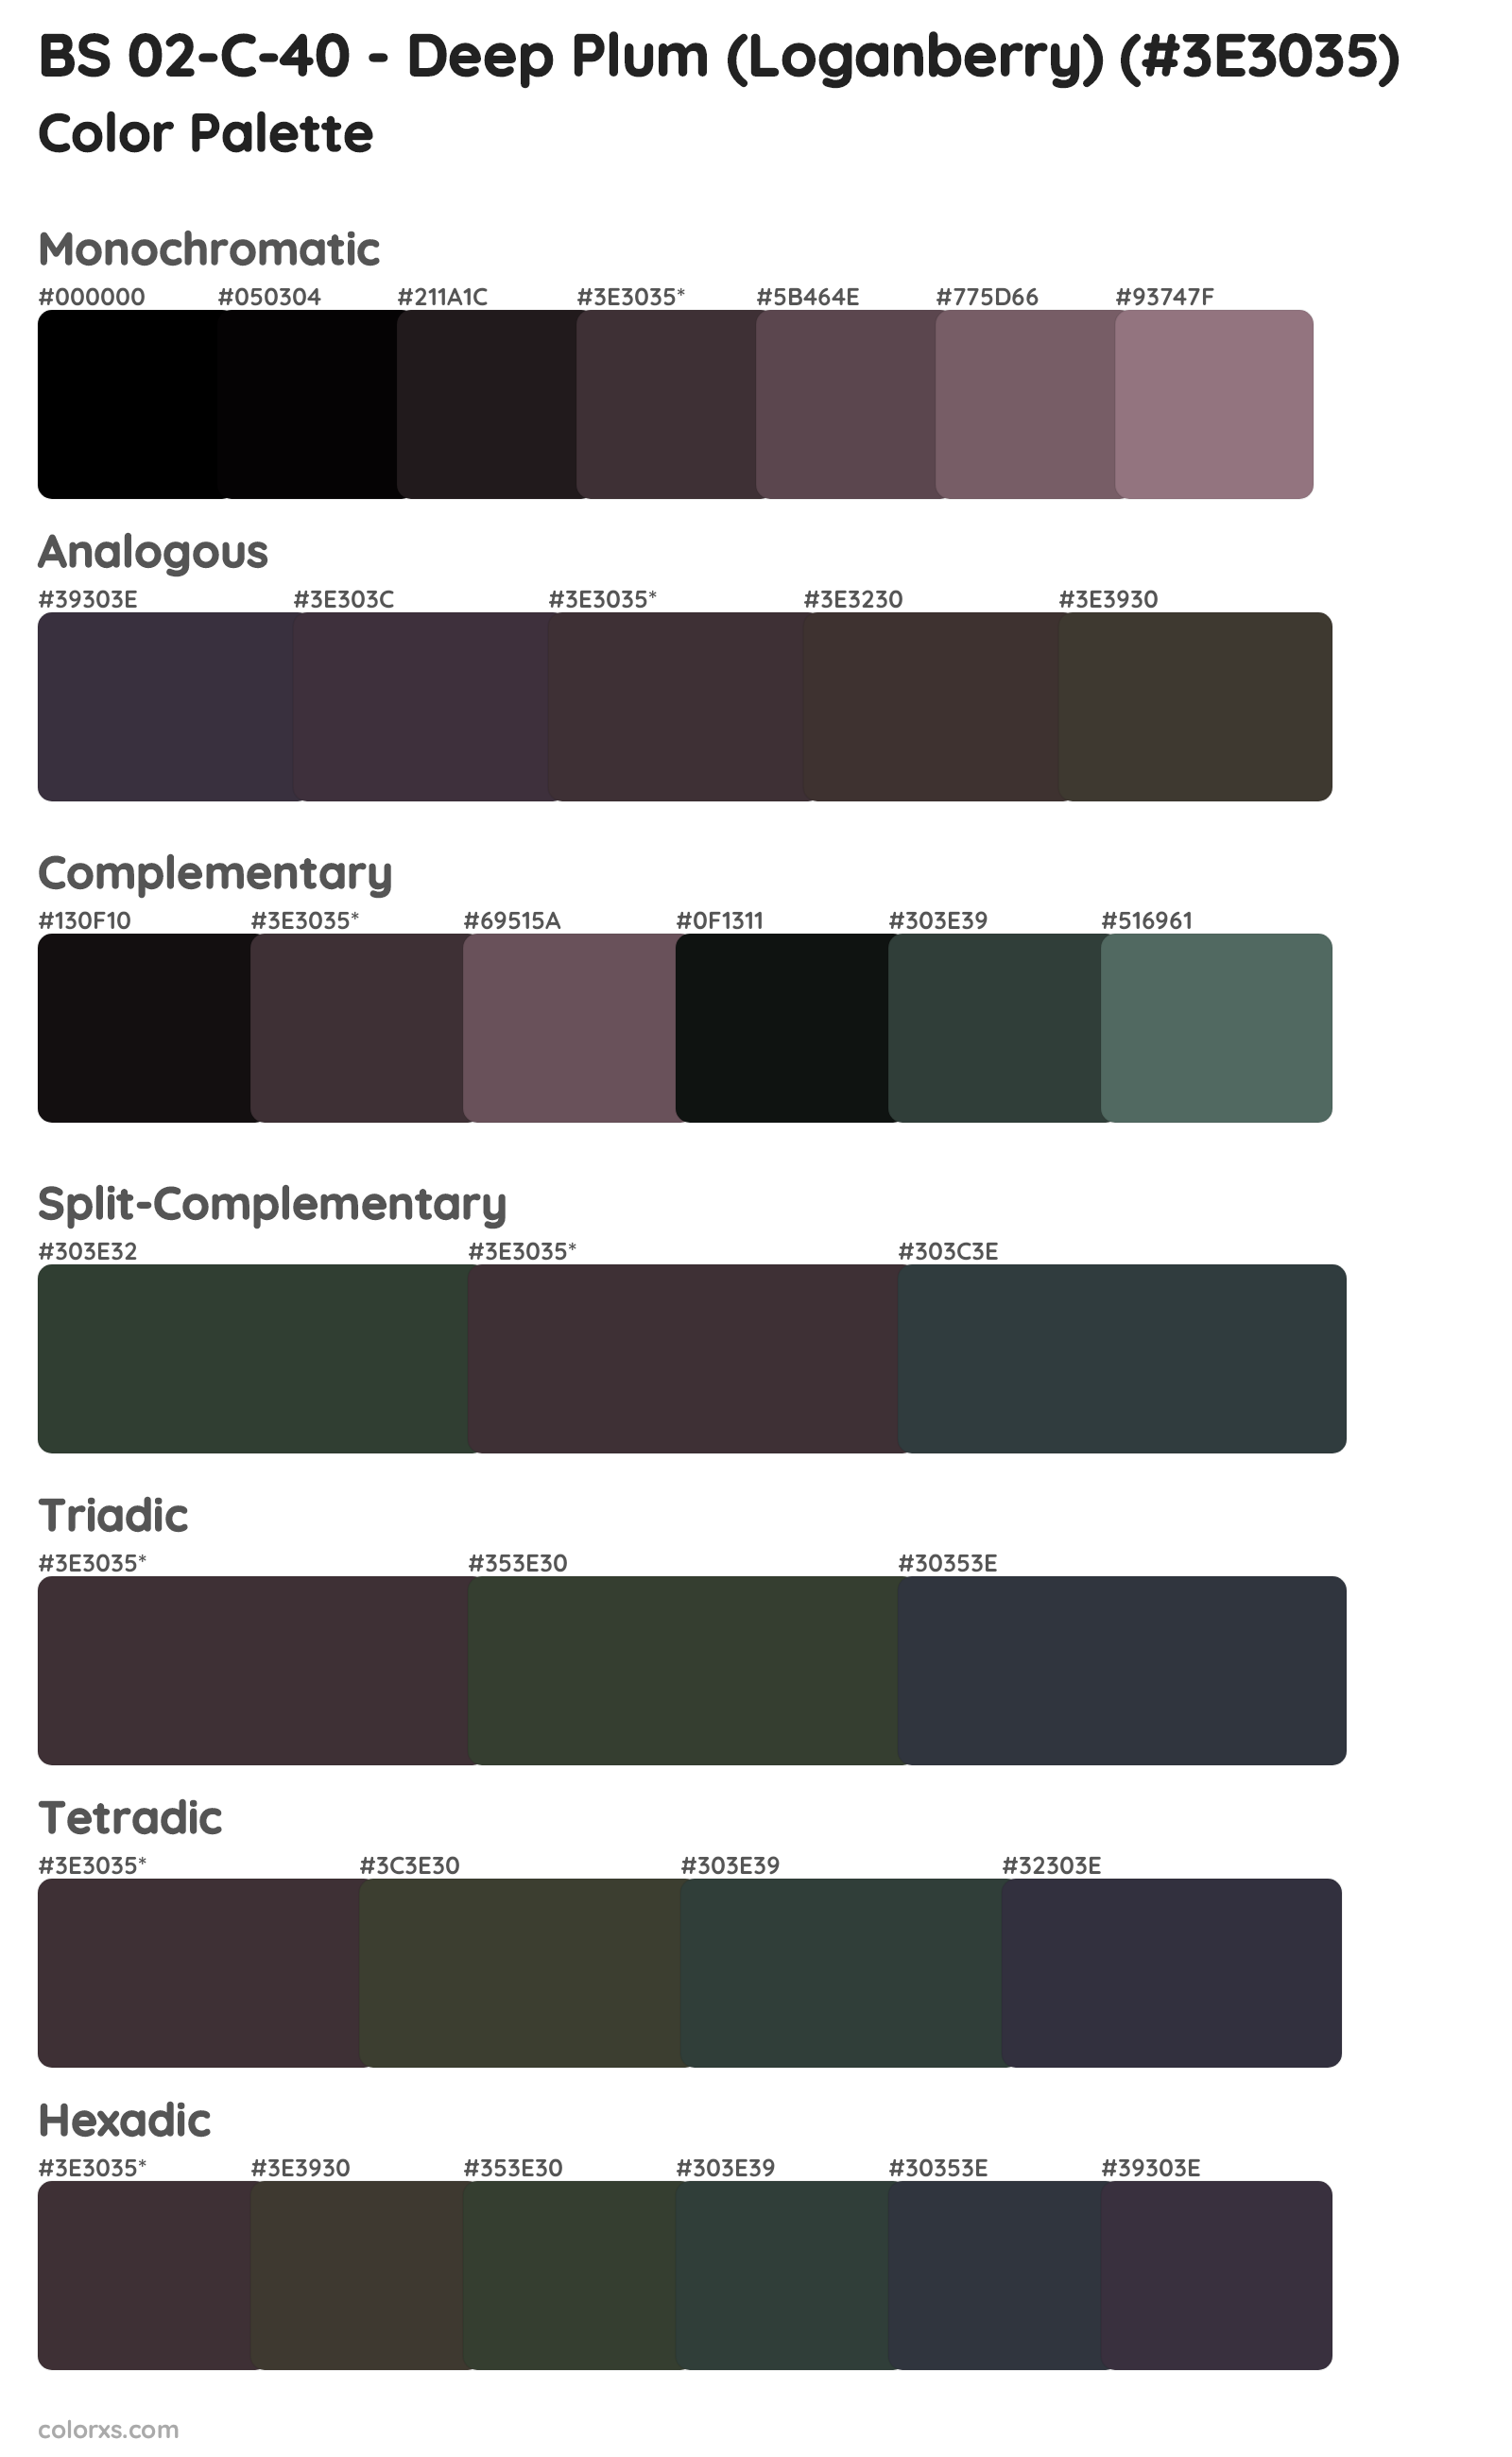 BS 02-C-40 - Deep Plum (Loganberry) Color Scheme Palettes